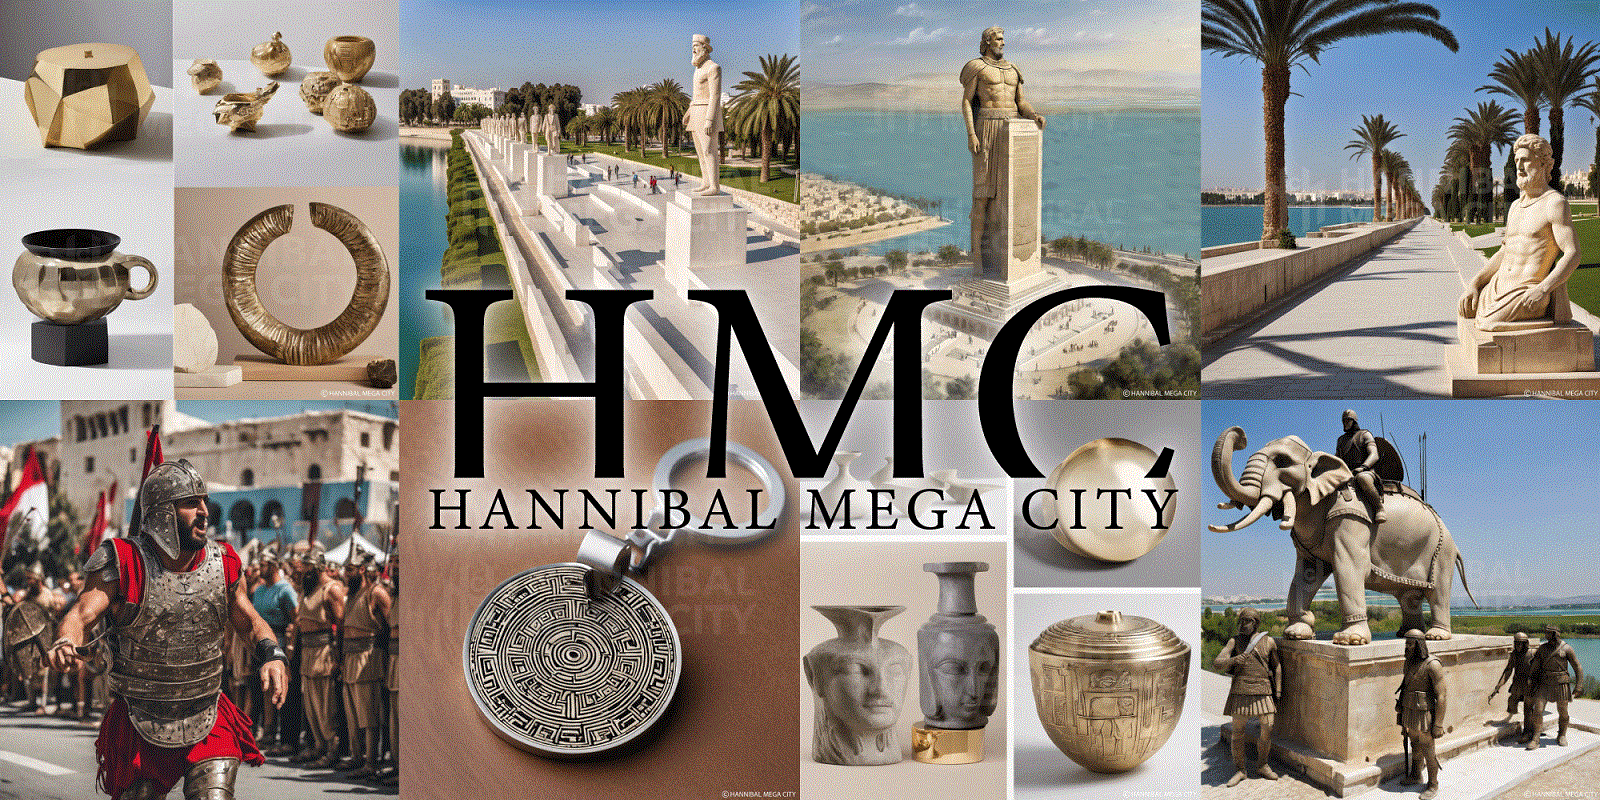 « Hannibal Mega City » الشركة الأهلية الجهوية بولاية تونس: حنبعل ميقا سيتي